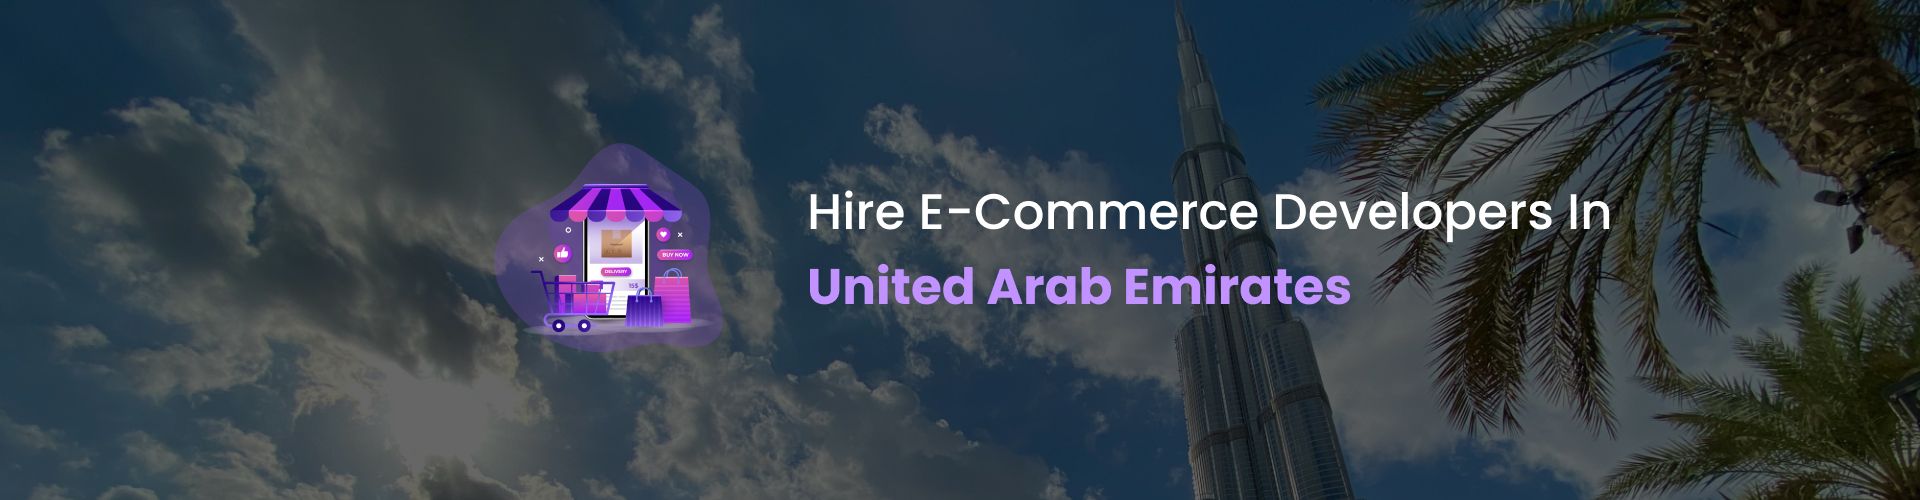 ecommerce developers united arab emirates